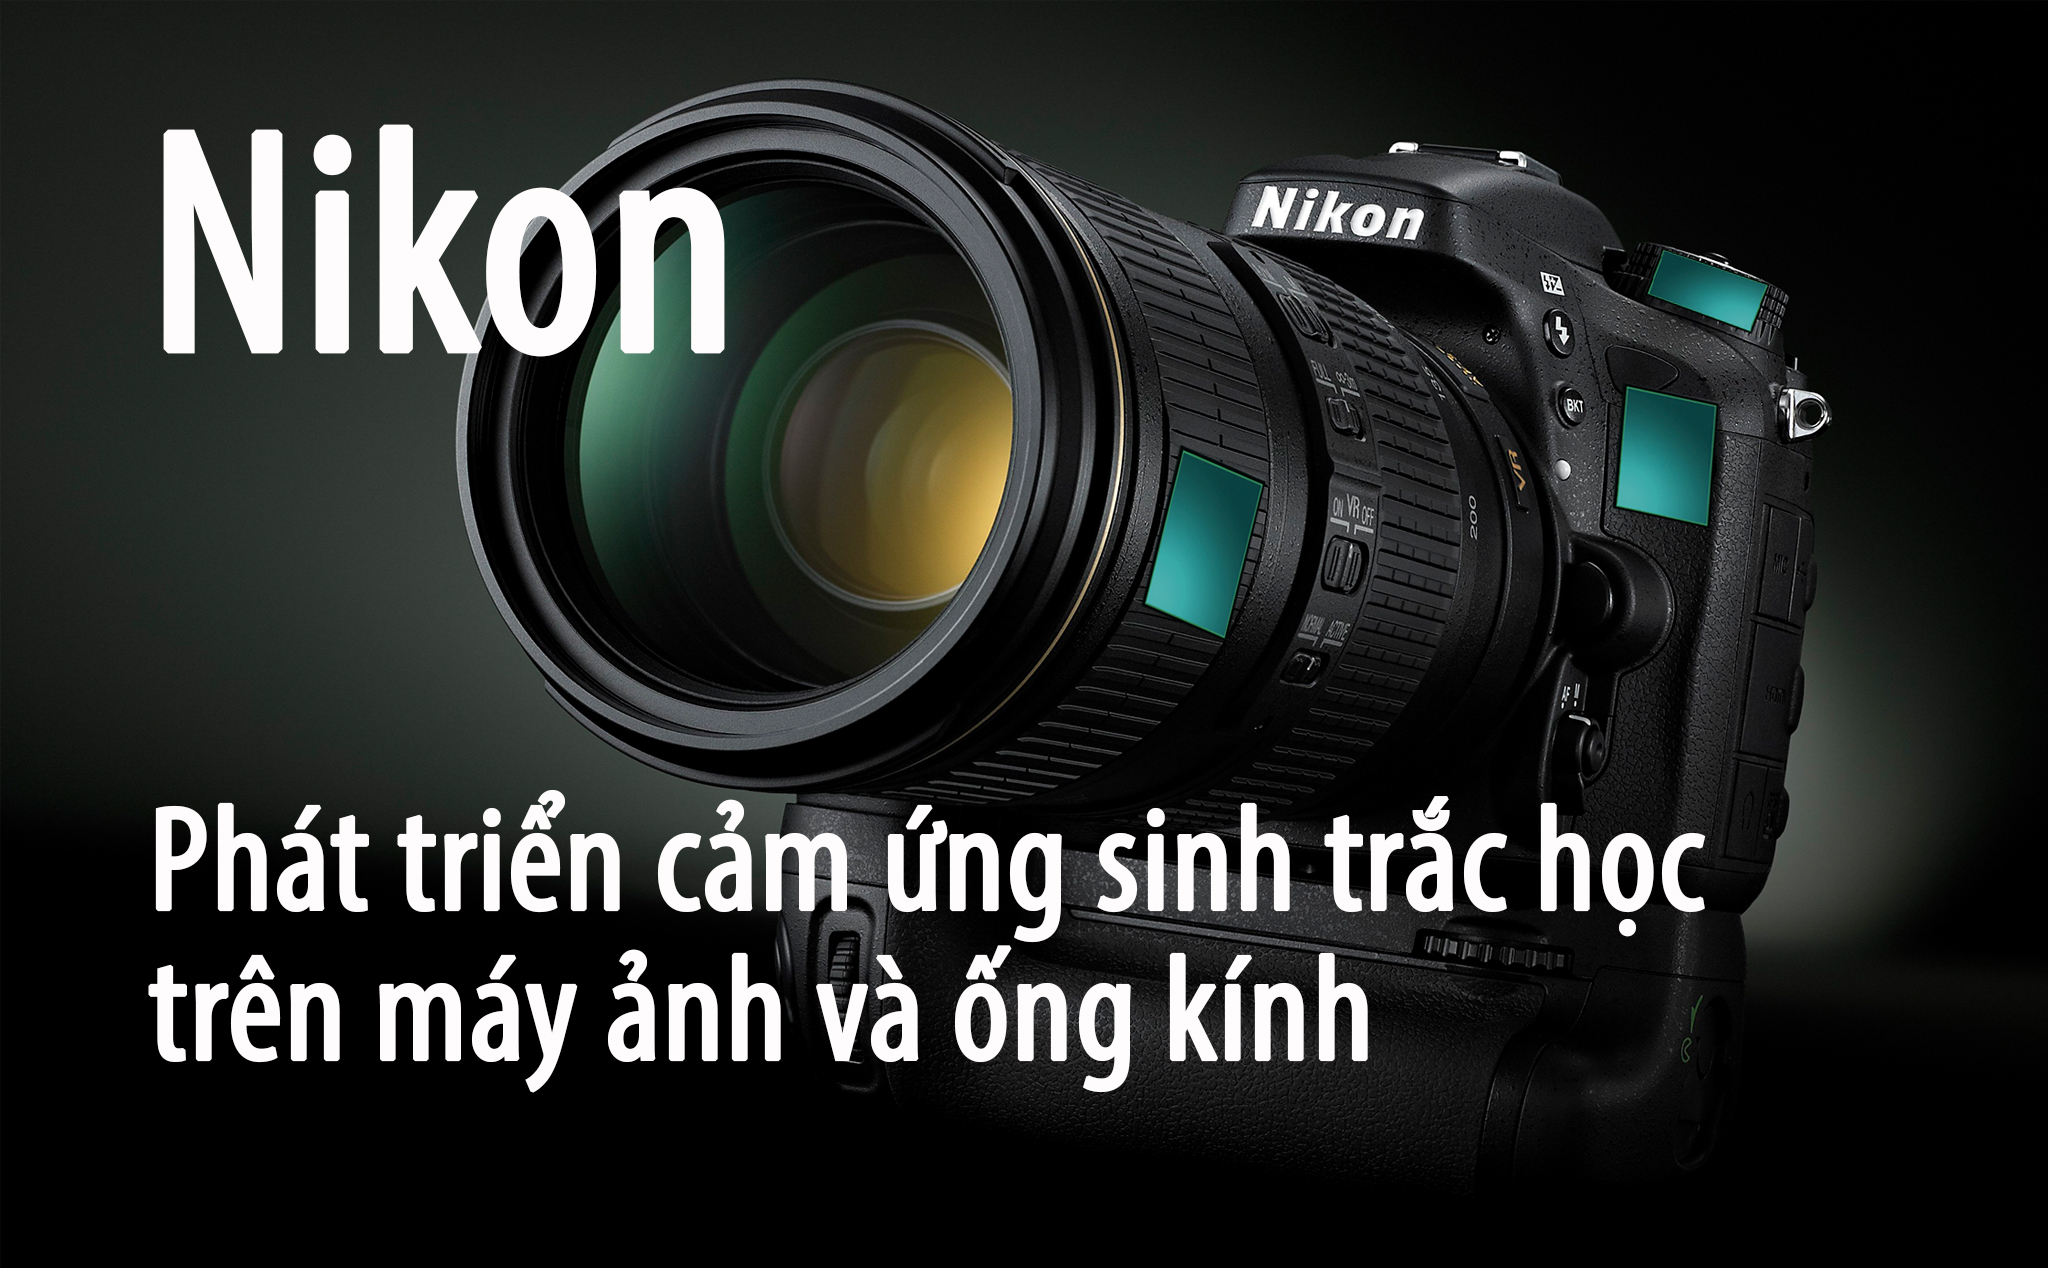 Nikon đang phát triển cảm biến sinh trắc học trên nút điều khiển để đọc cảm xúc của người chụp